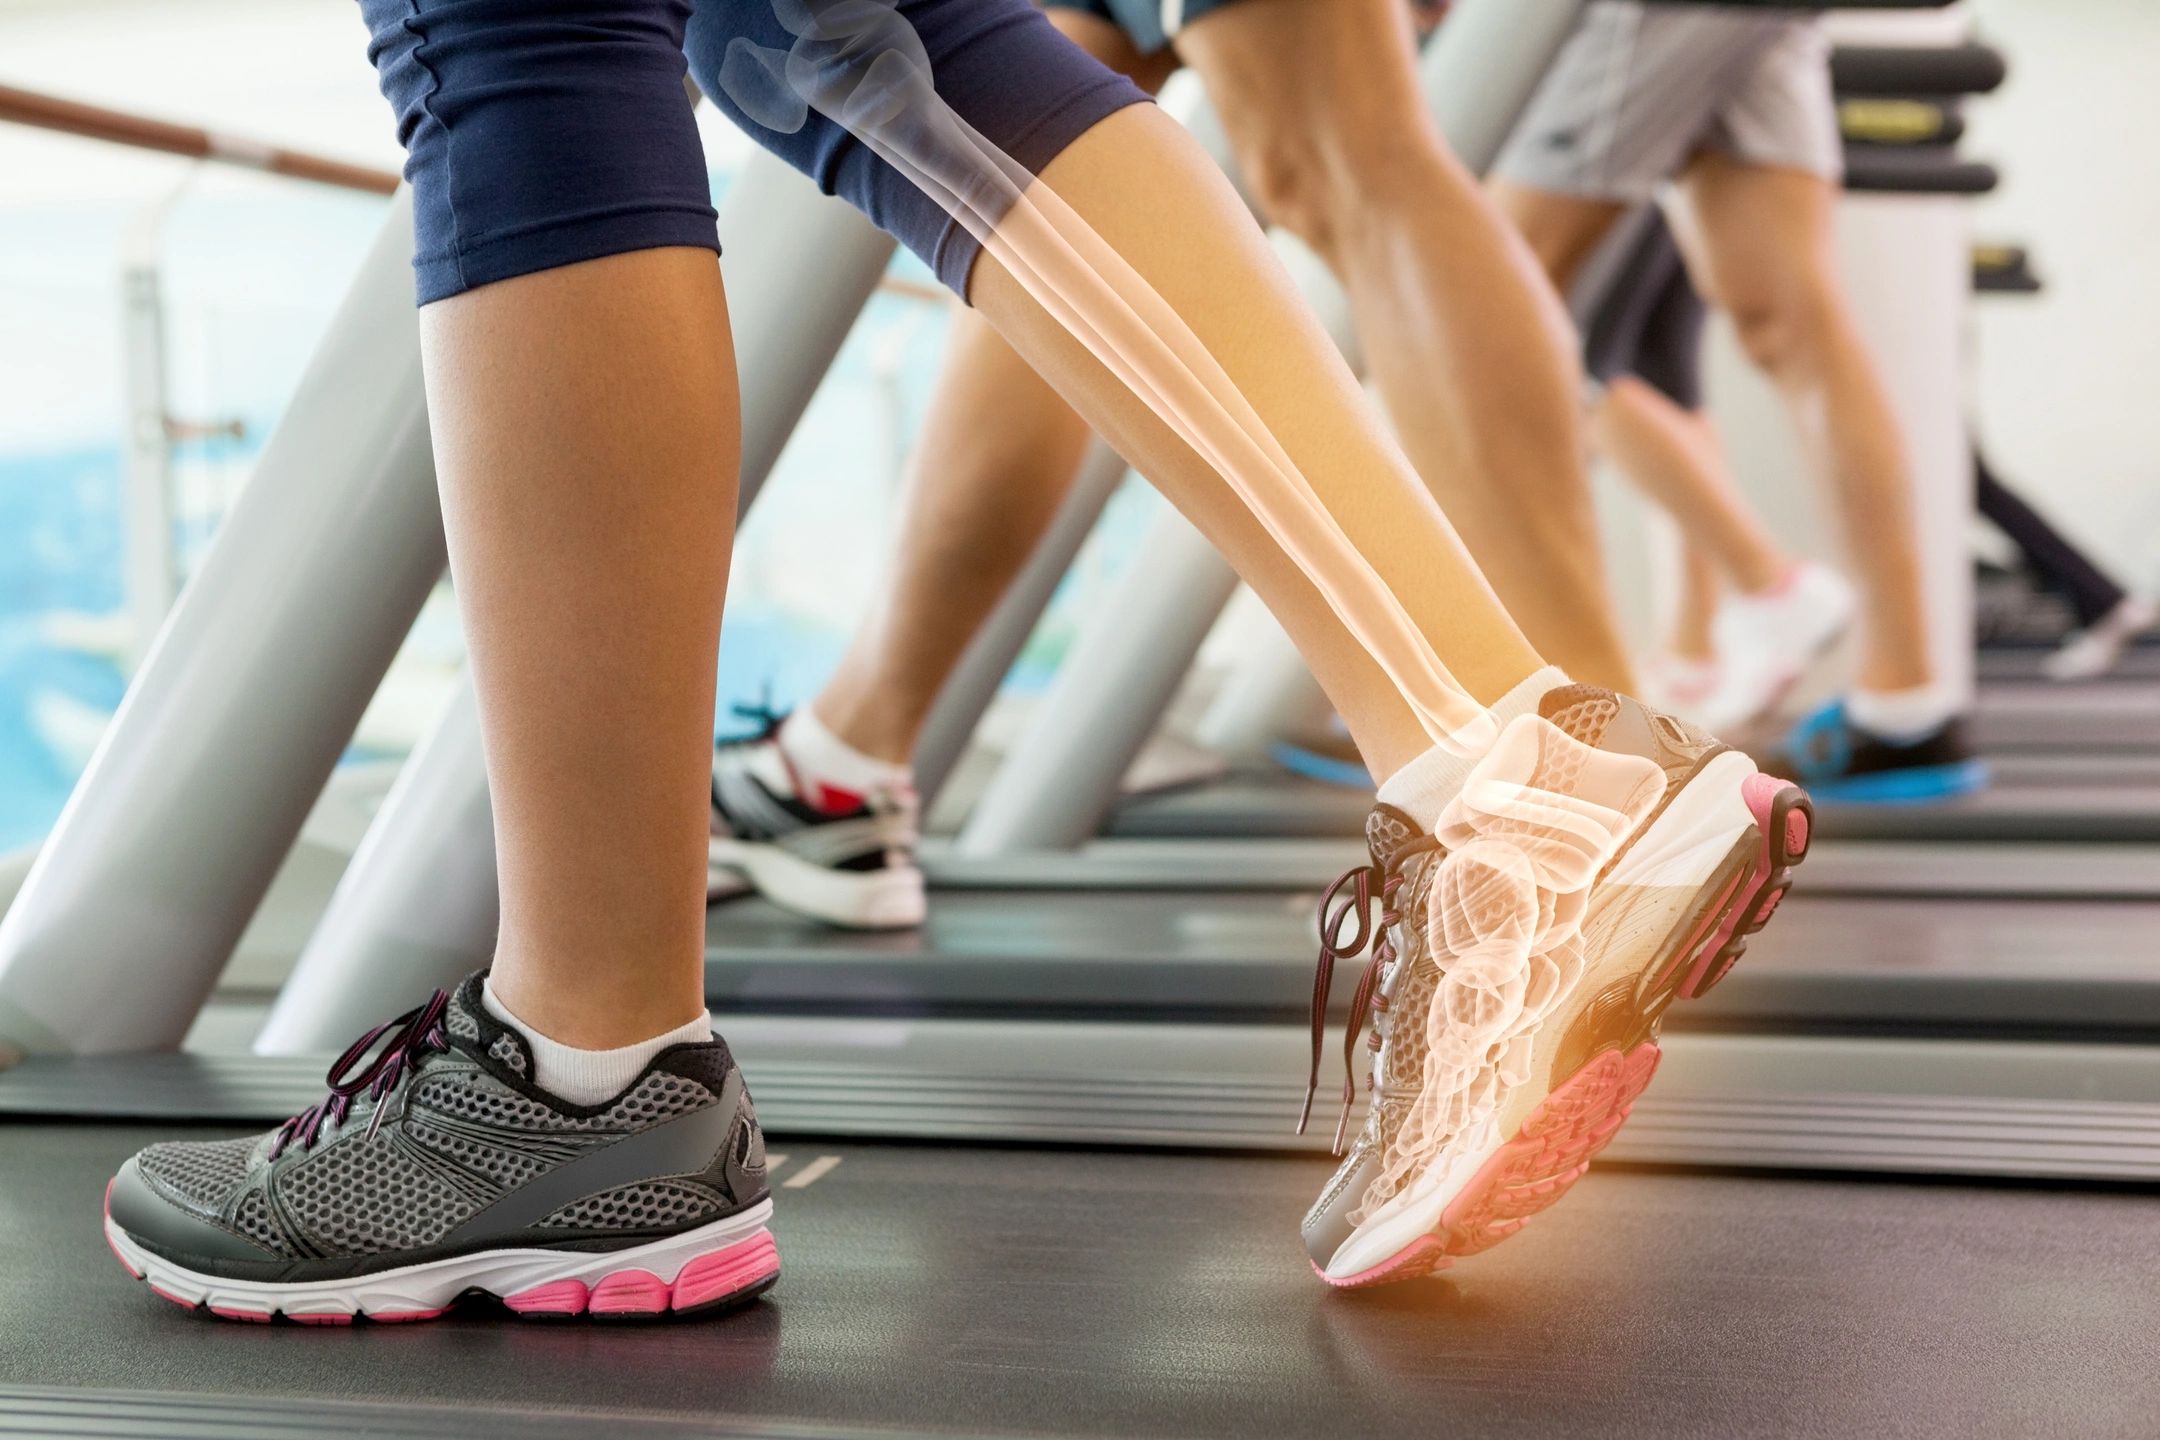 Comment les orthèses personnalisées réduisent-elles la douleur au pied et la fatigue?